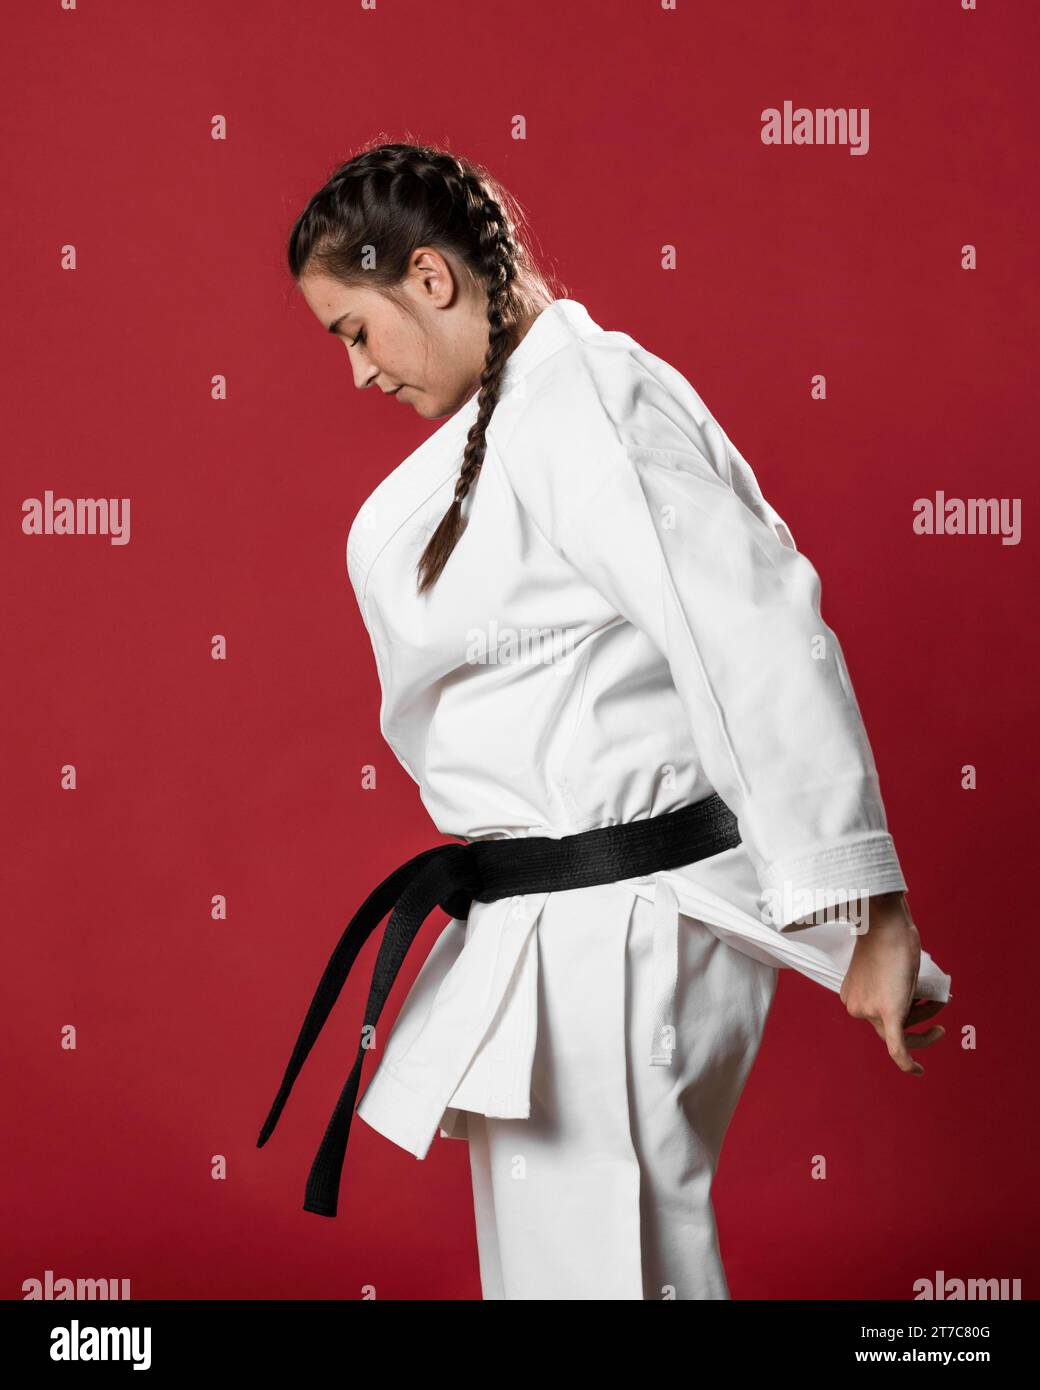 Sideways karate woman traditional white kimono red background Stock Photo